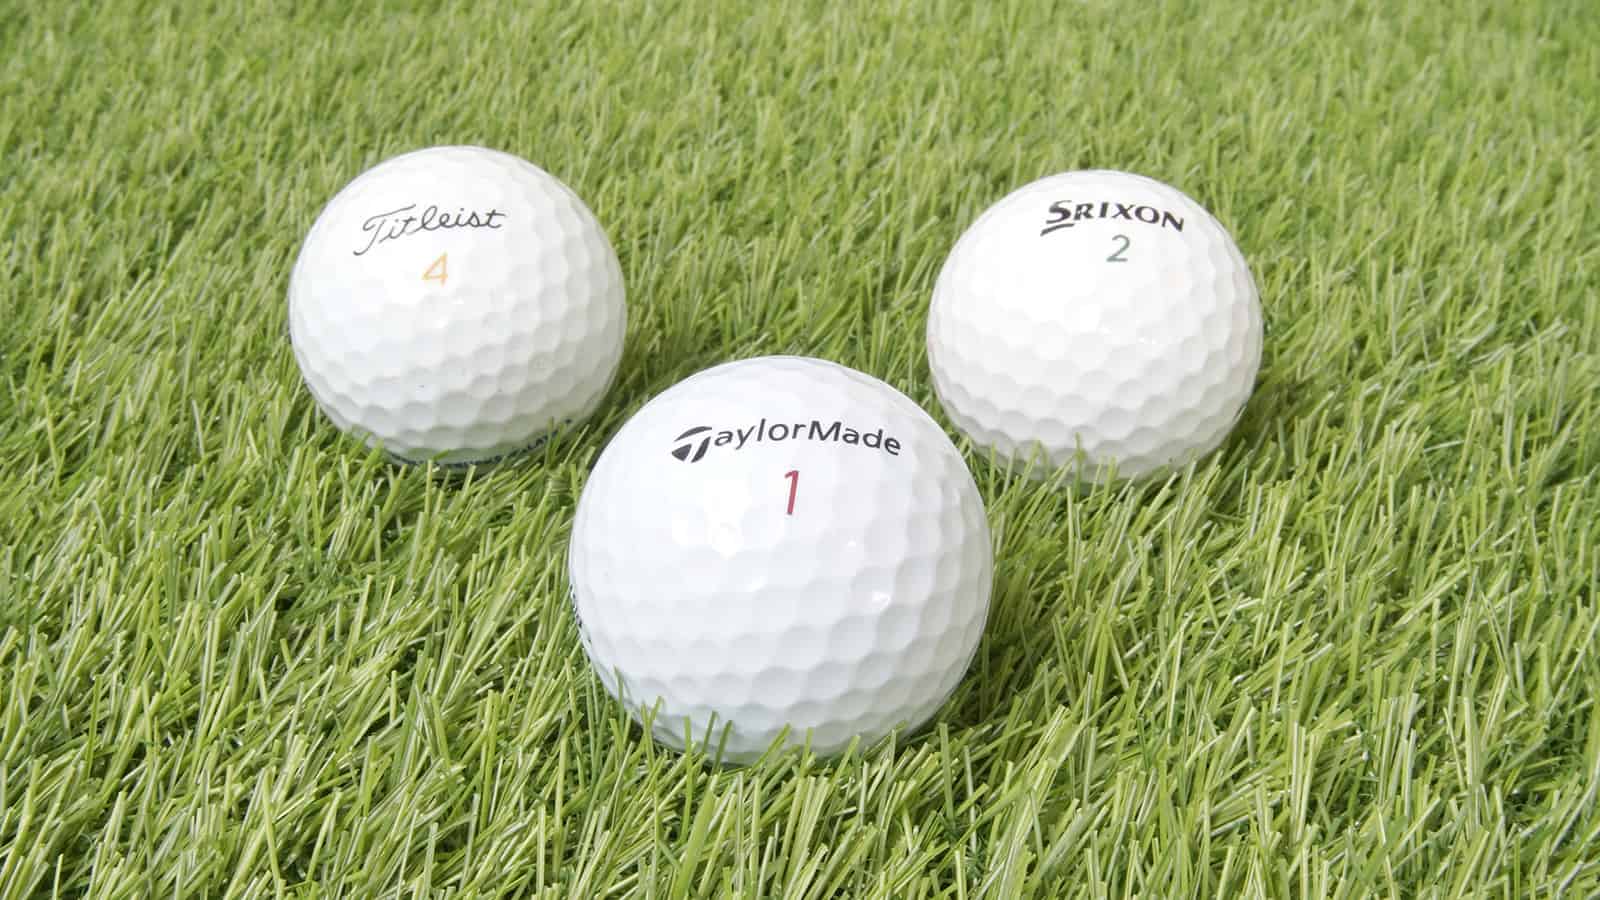 What-Golf-Balls-Do-Pros-Use-on-PGA-Tour